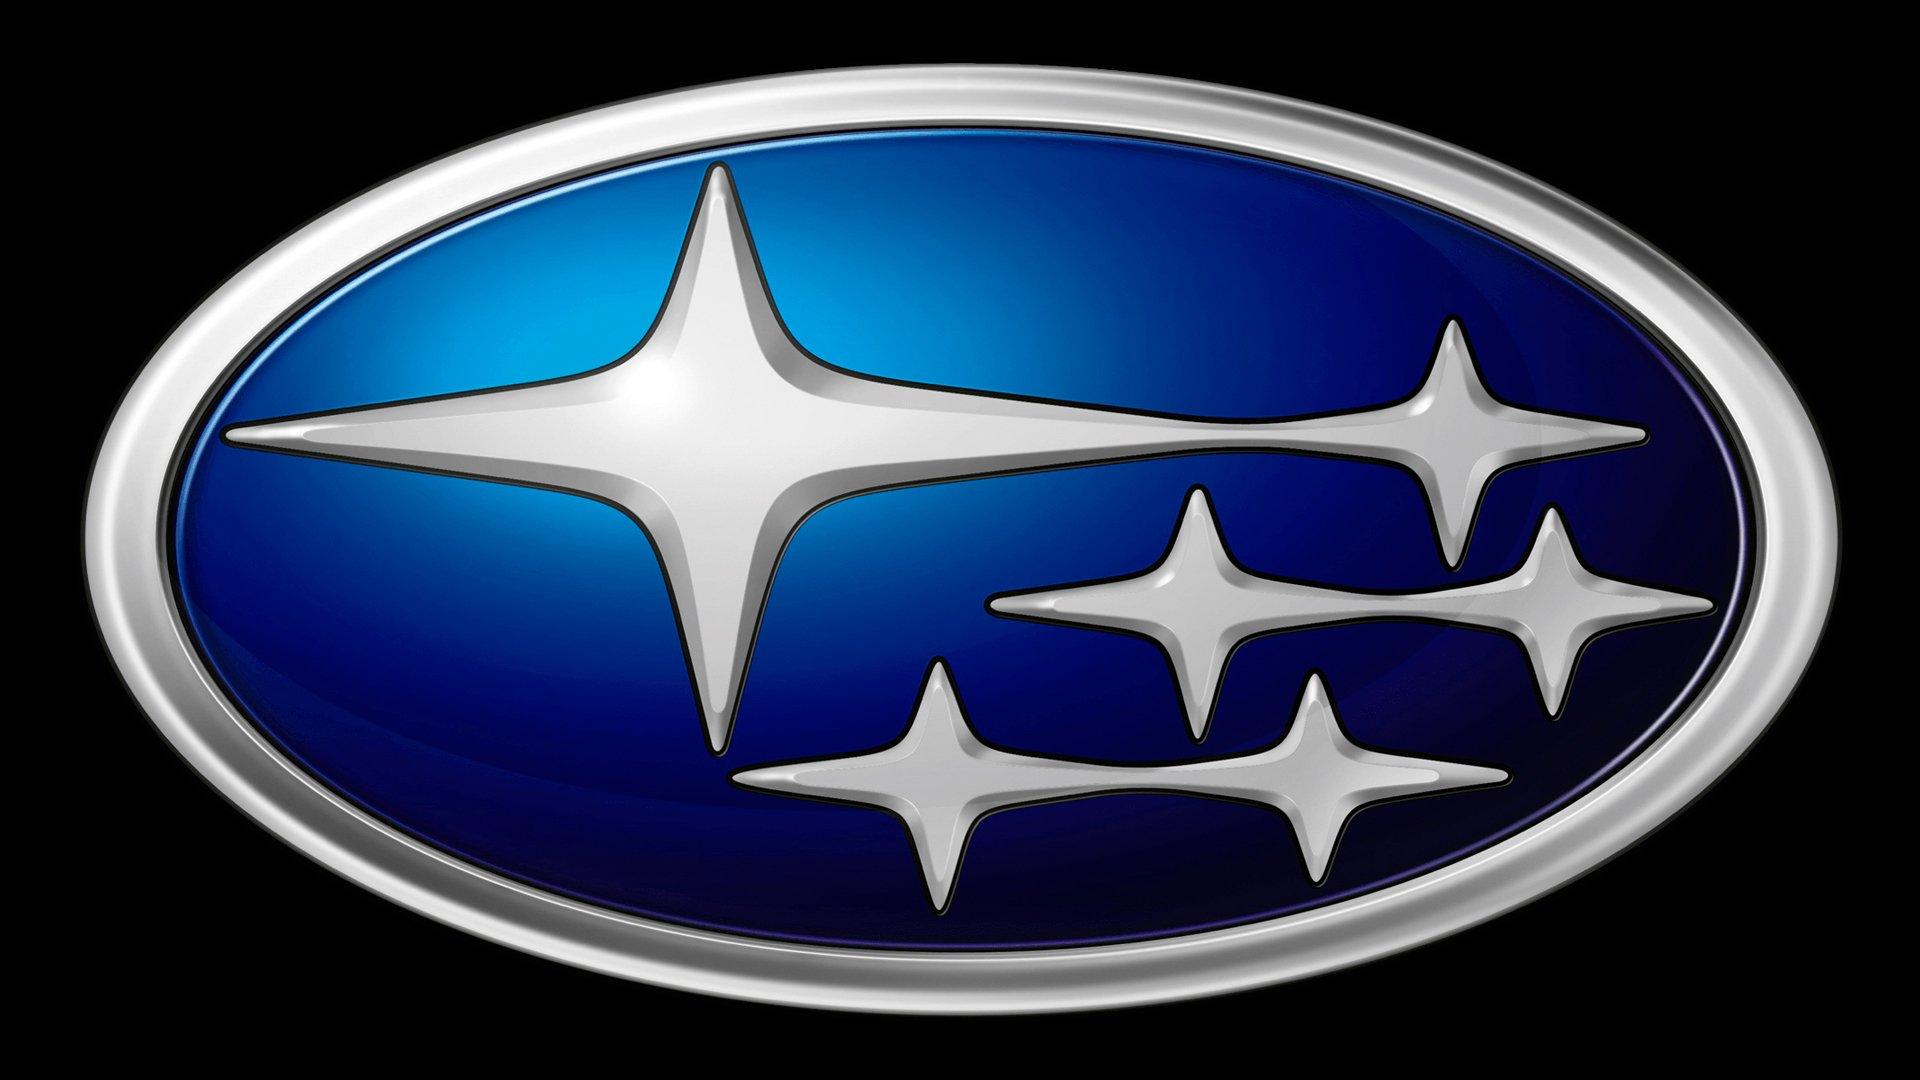 Subaru car logo